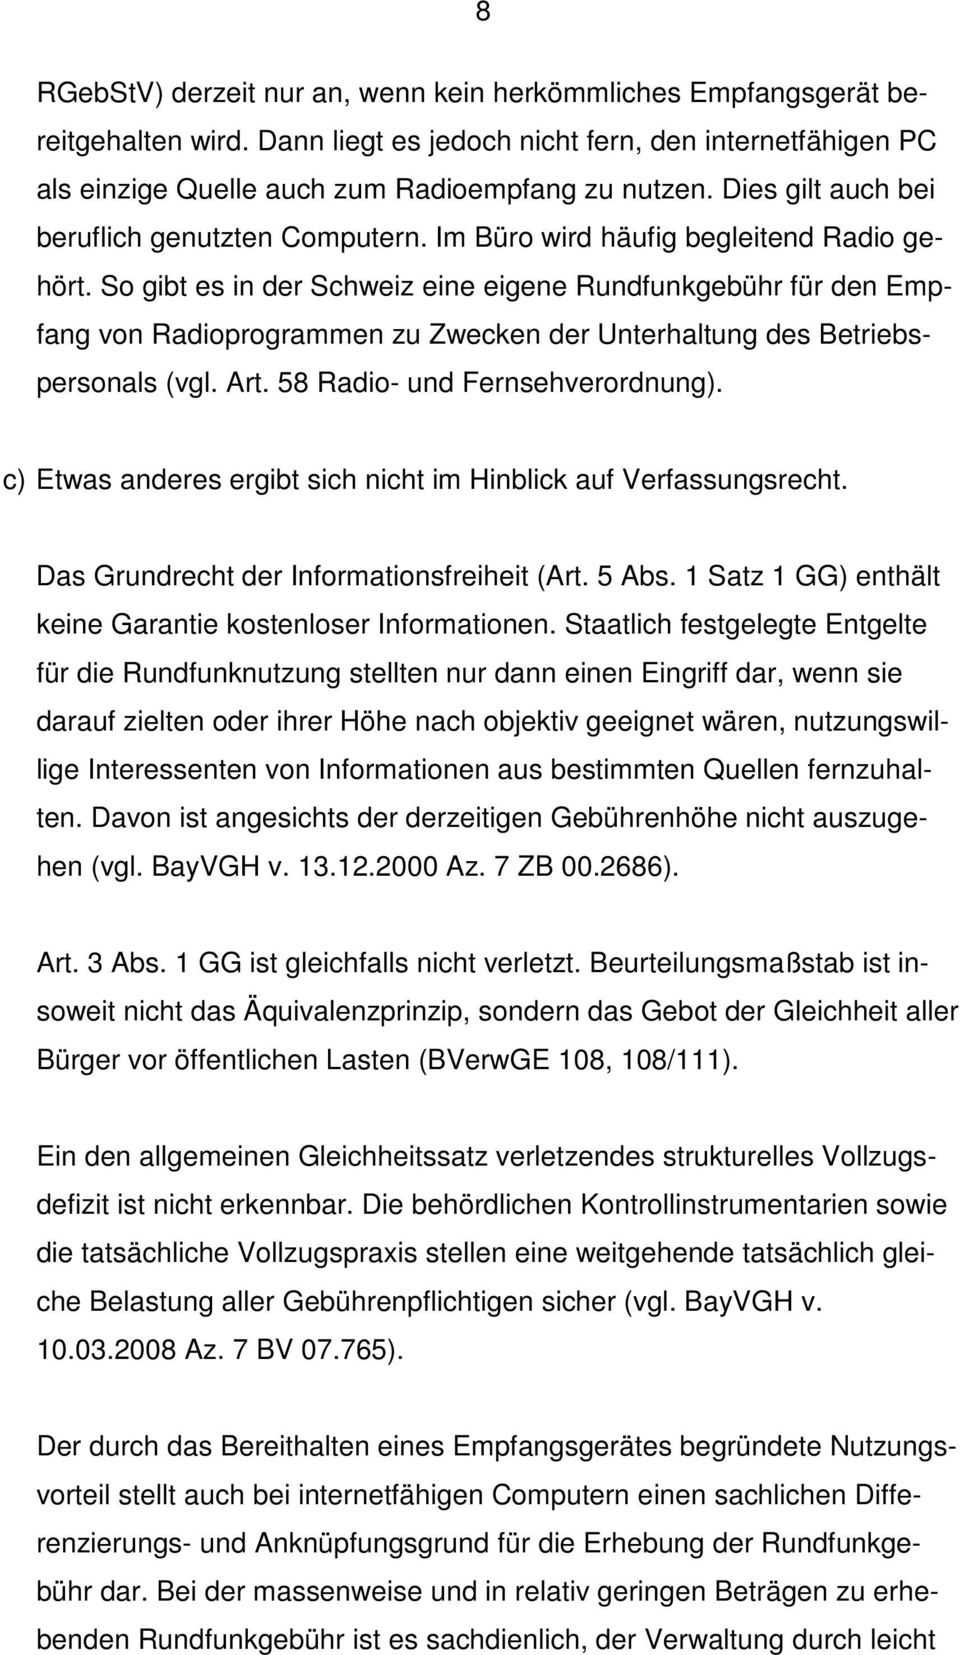 So gibt es in der Schweiz eine eigene Rundfunkgebühr für den Empfang von Radioprogrammen zu Zwecken der Unterhaltung des Betriebspersonals (vgl. Art. 58 Radio- und Fernsehverordnung).